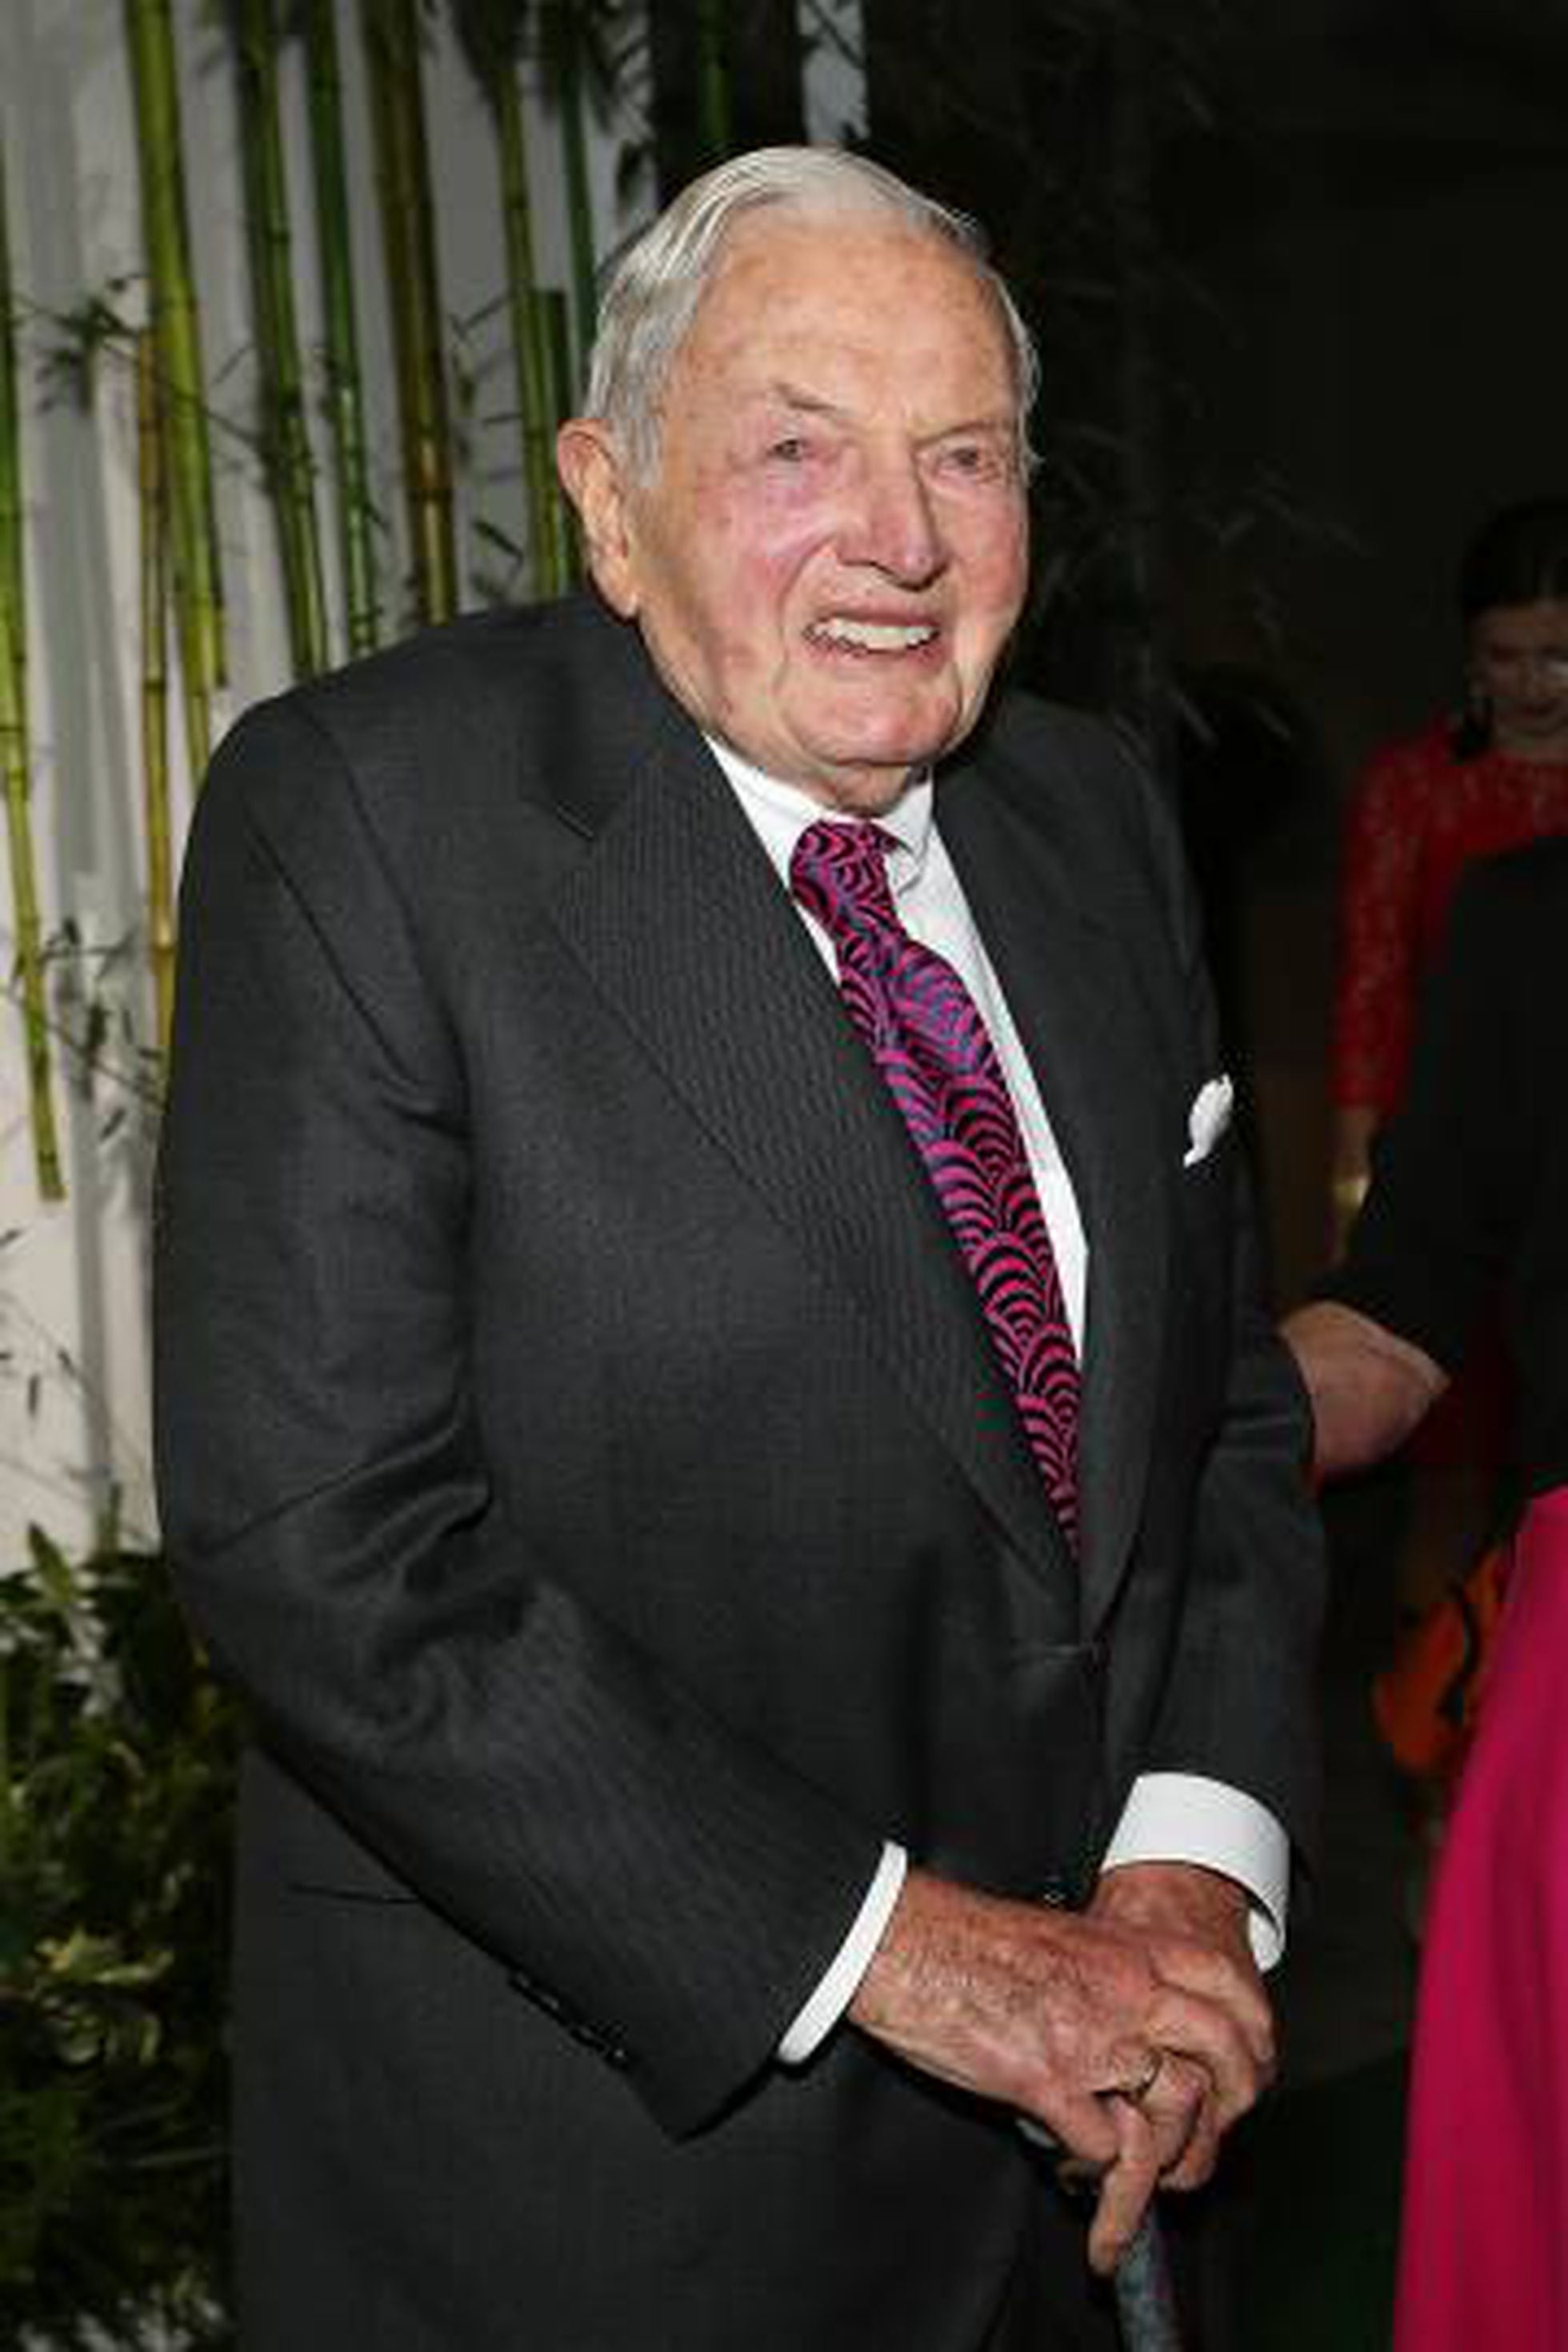 David Rockefeller: Morreu o magnata mais velho do mundo